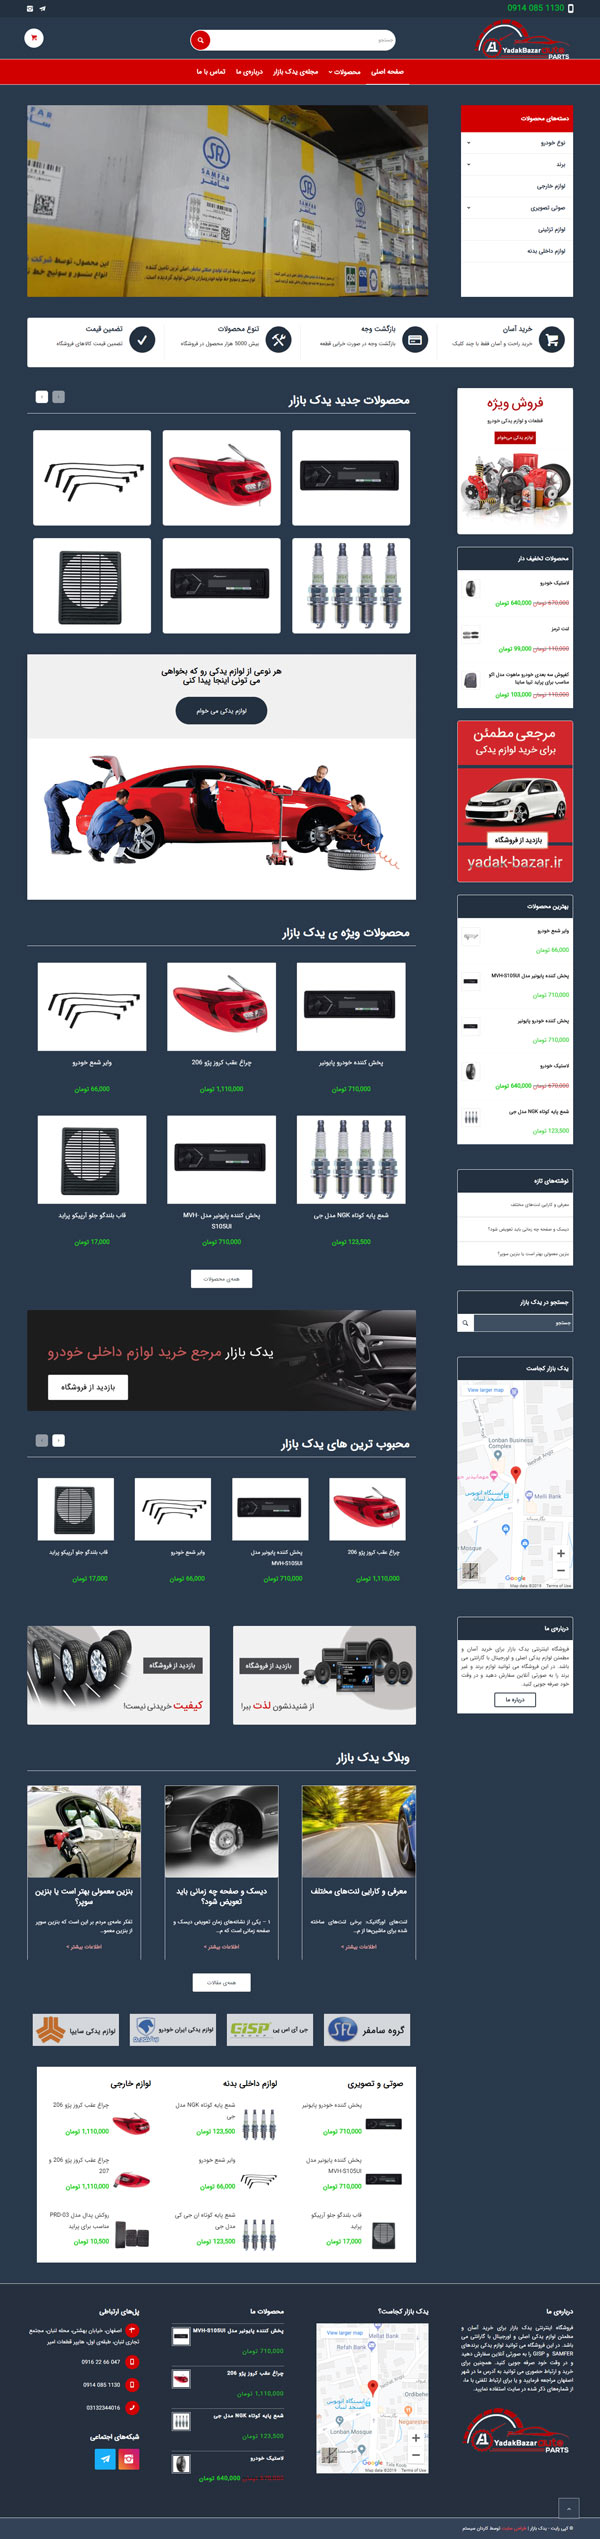 طراحی سایت یدک بازار | فروشگاه آنلاین لوازم یدکی خودرو